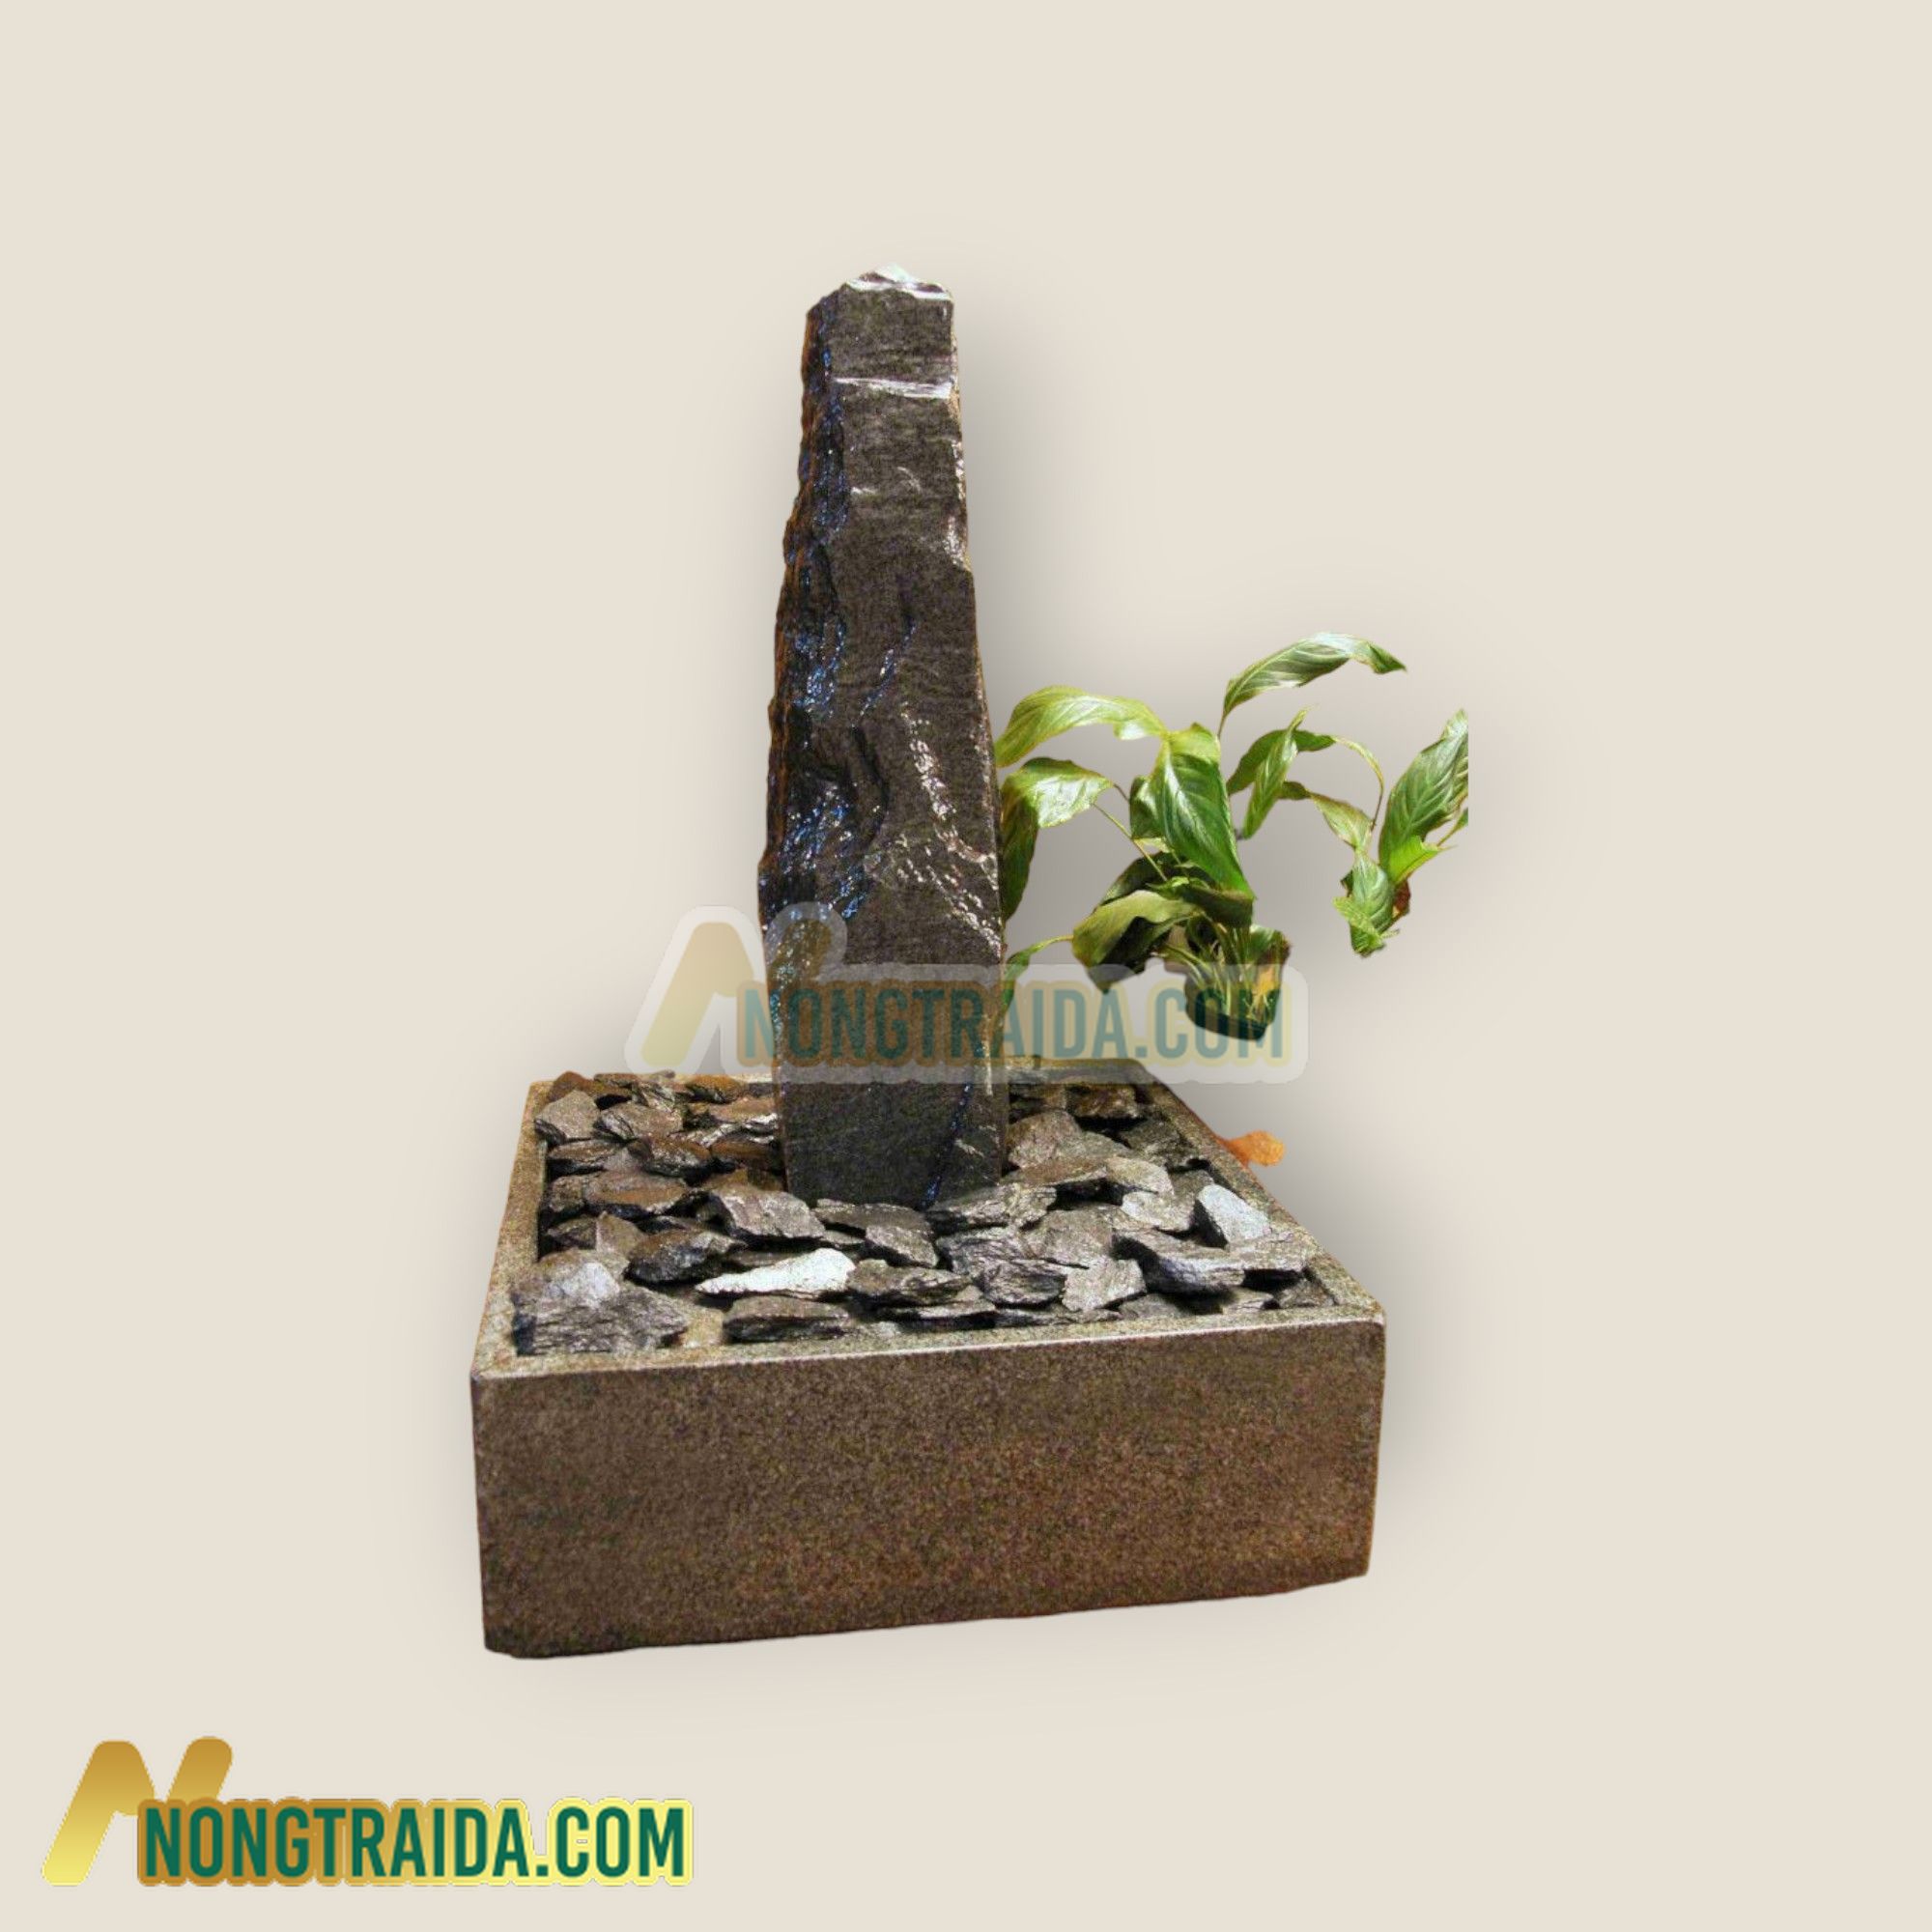 Bộ phun nước trong nhà Monolith đá phiến xám đen trong bể granit lục giác